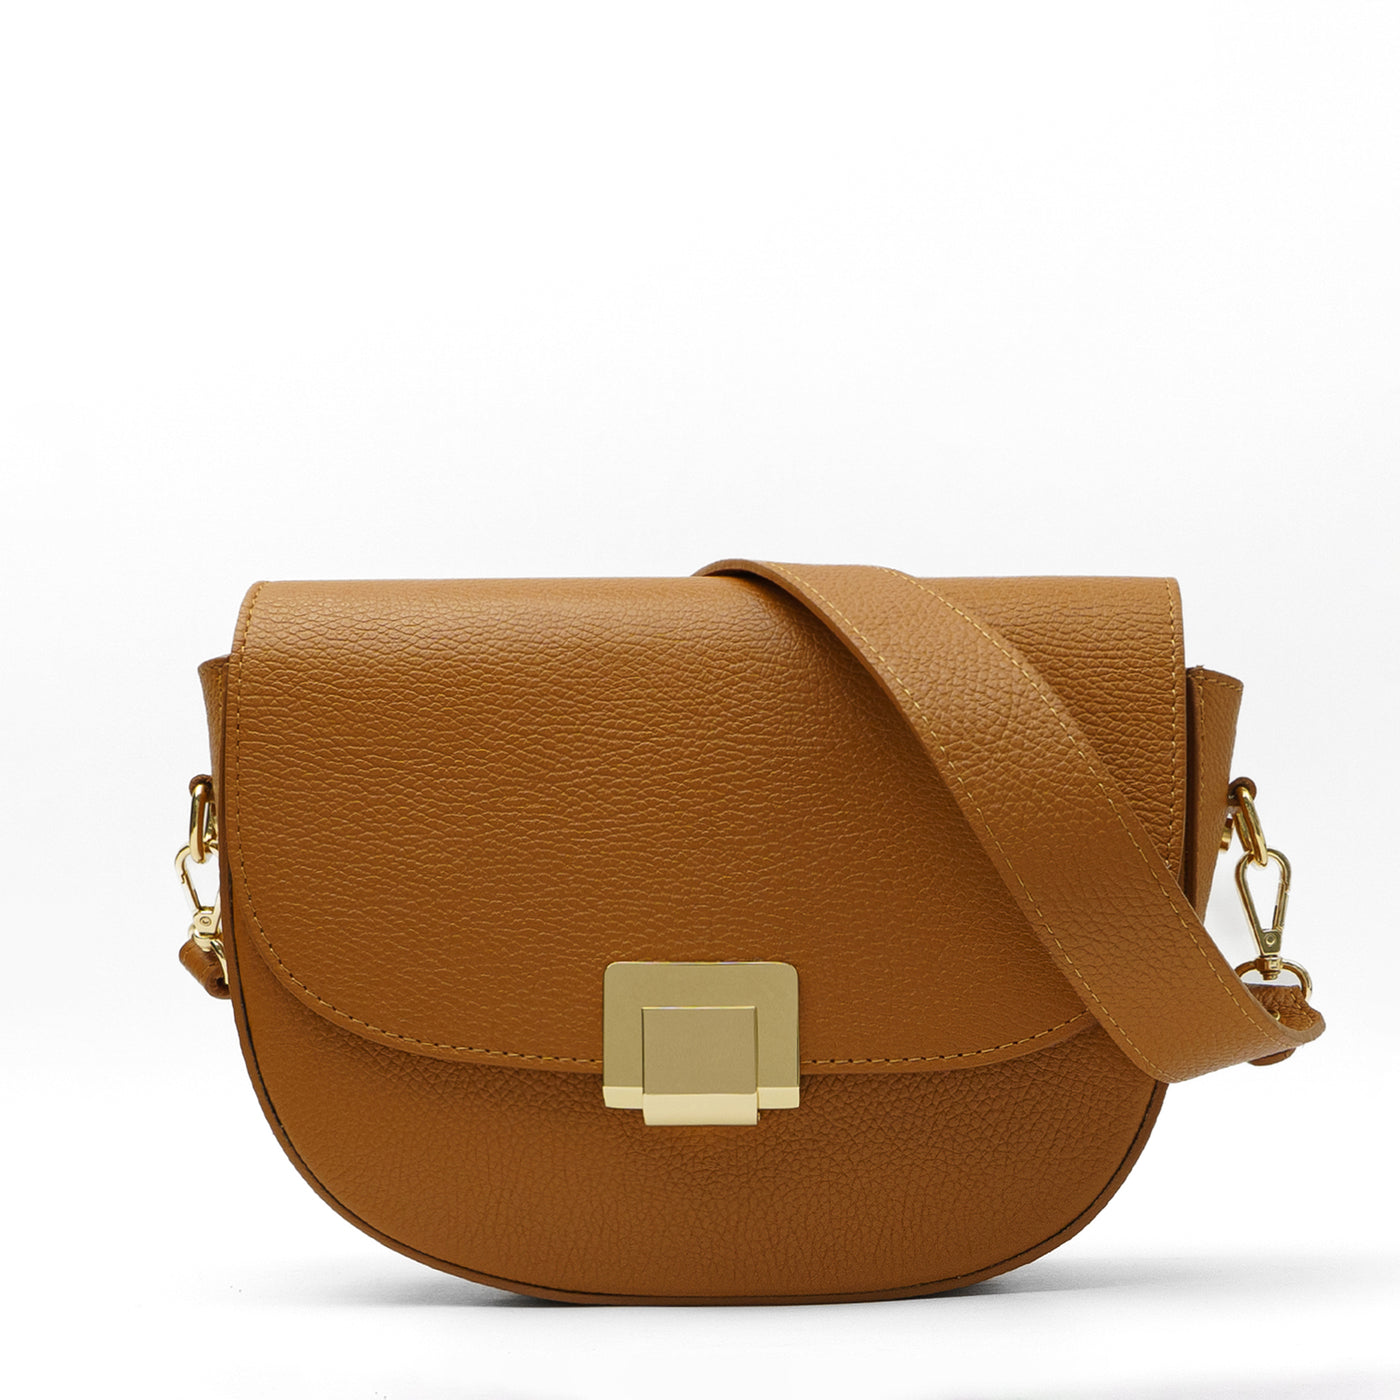 Leather bag "Como" Brown